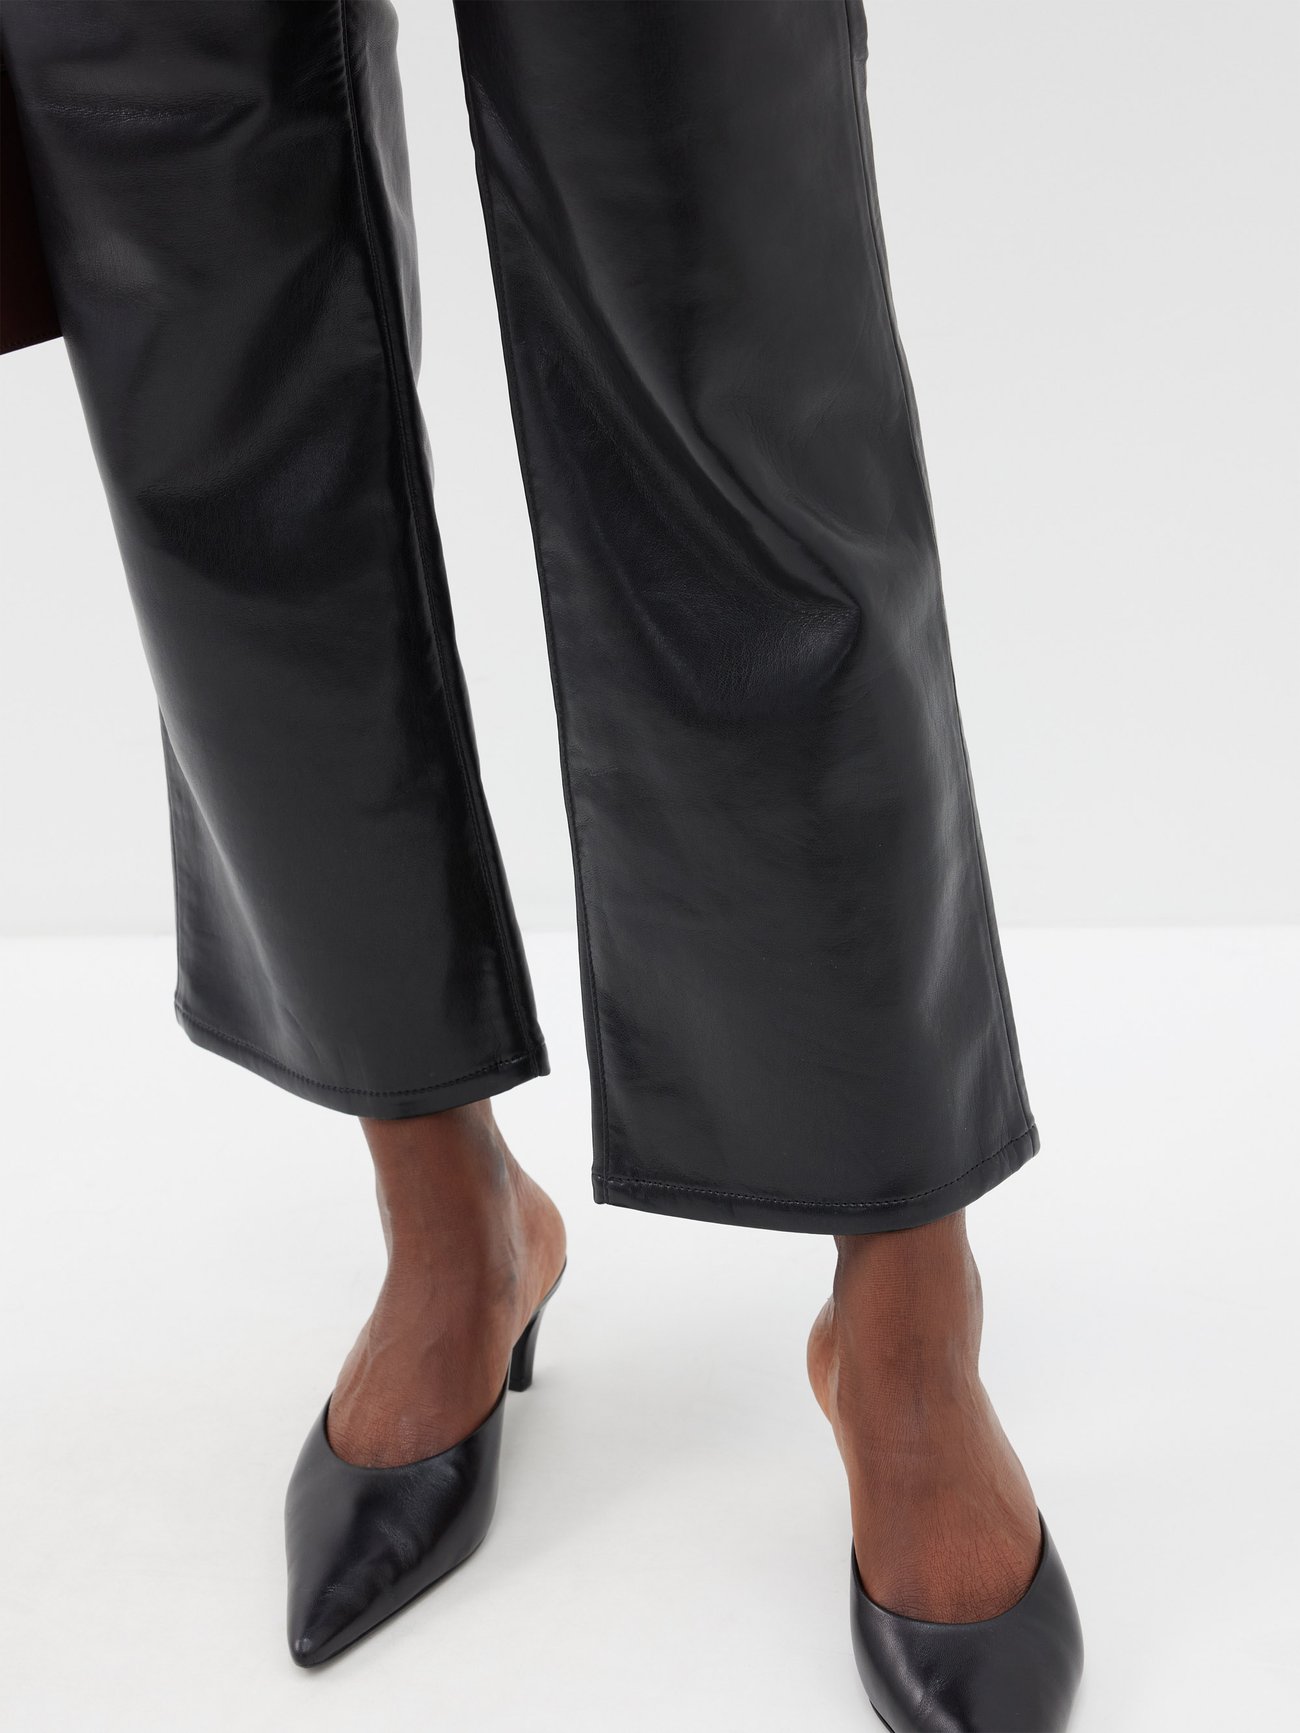 Le Jane leather-blend pants